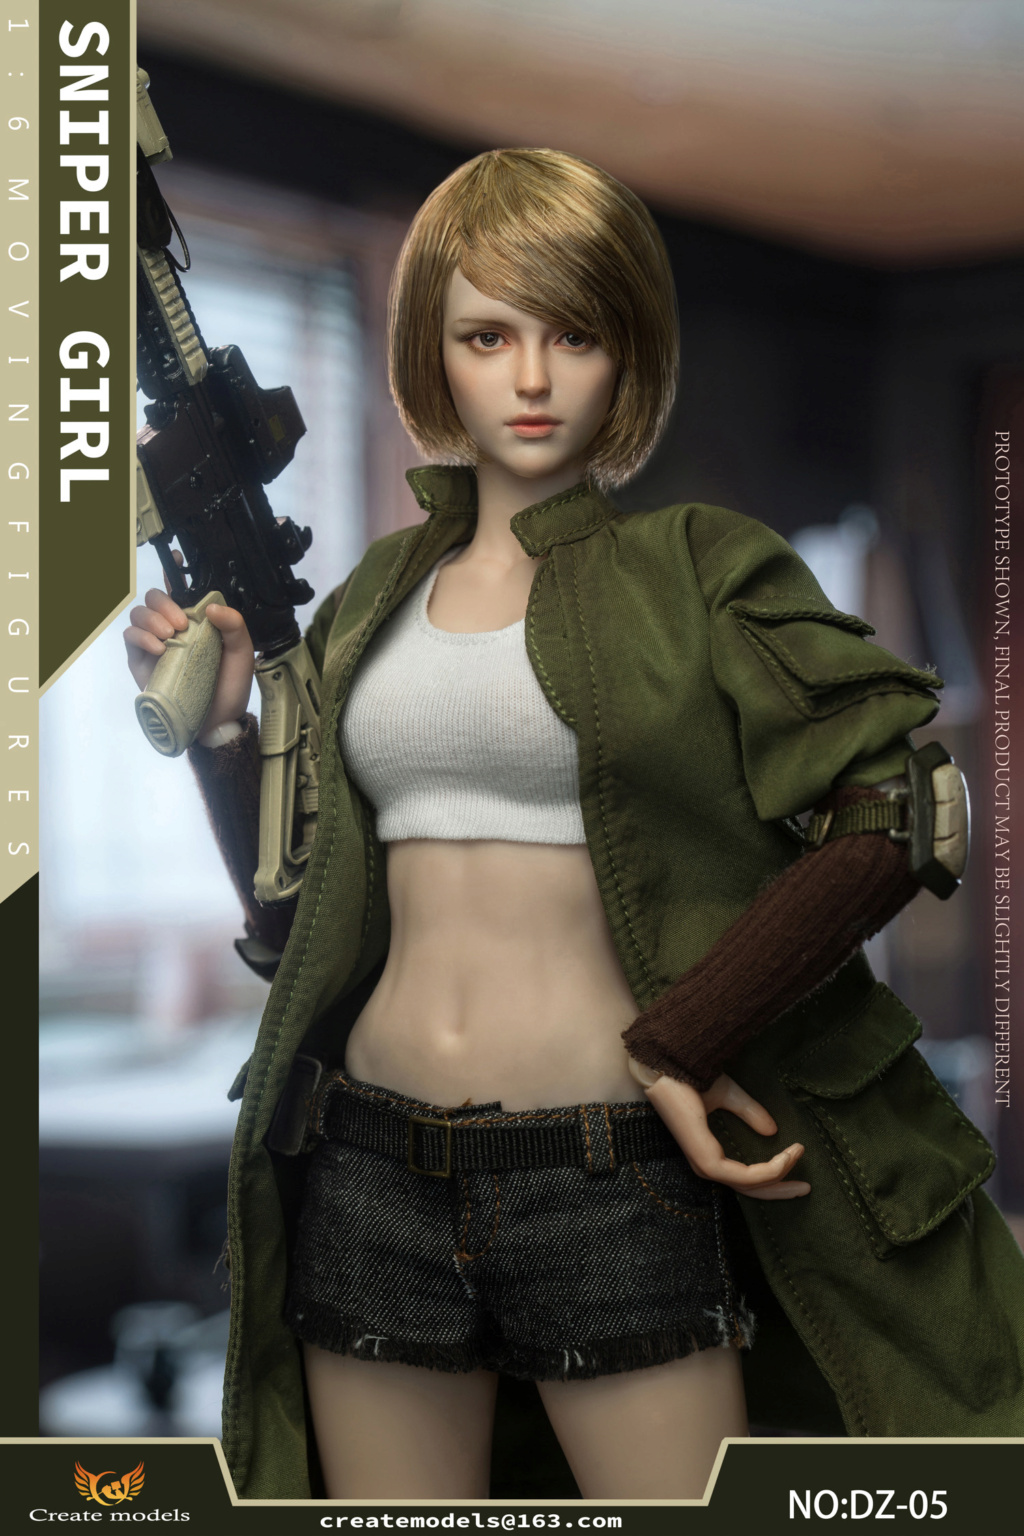 NEW PRODUCT: Createmodels: 1/6 Sniper Girl-Songbird/Lan Action Figures #DZ-05/DZ-06 18512110